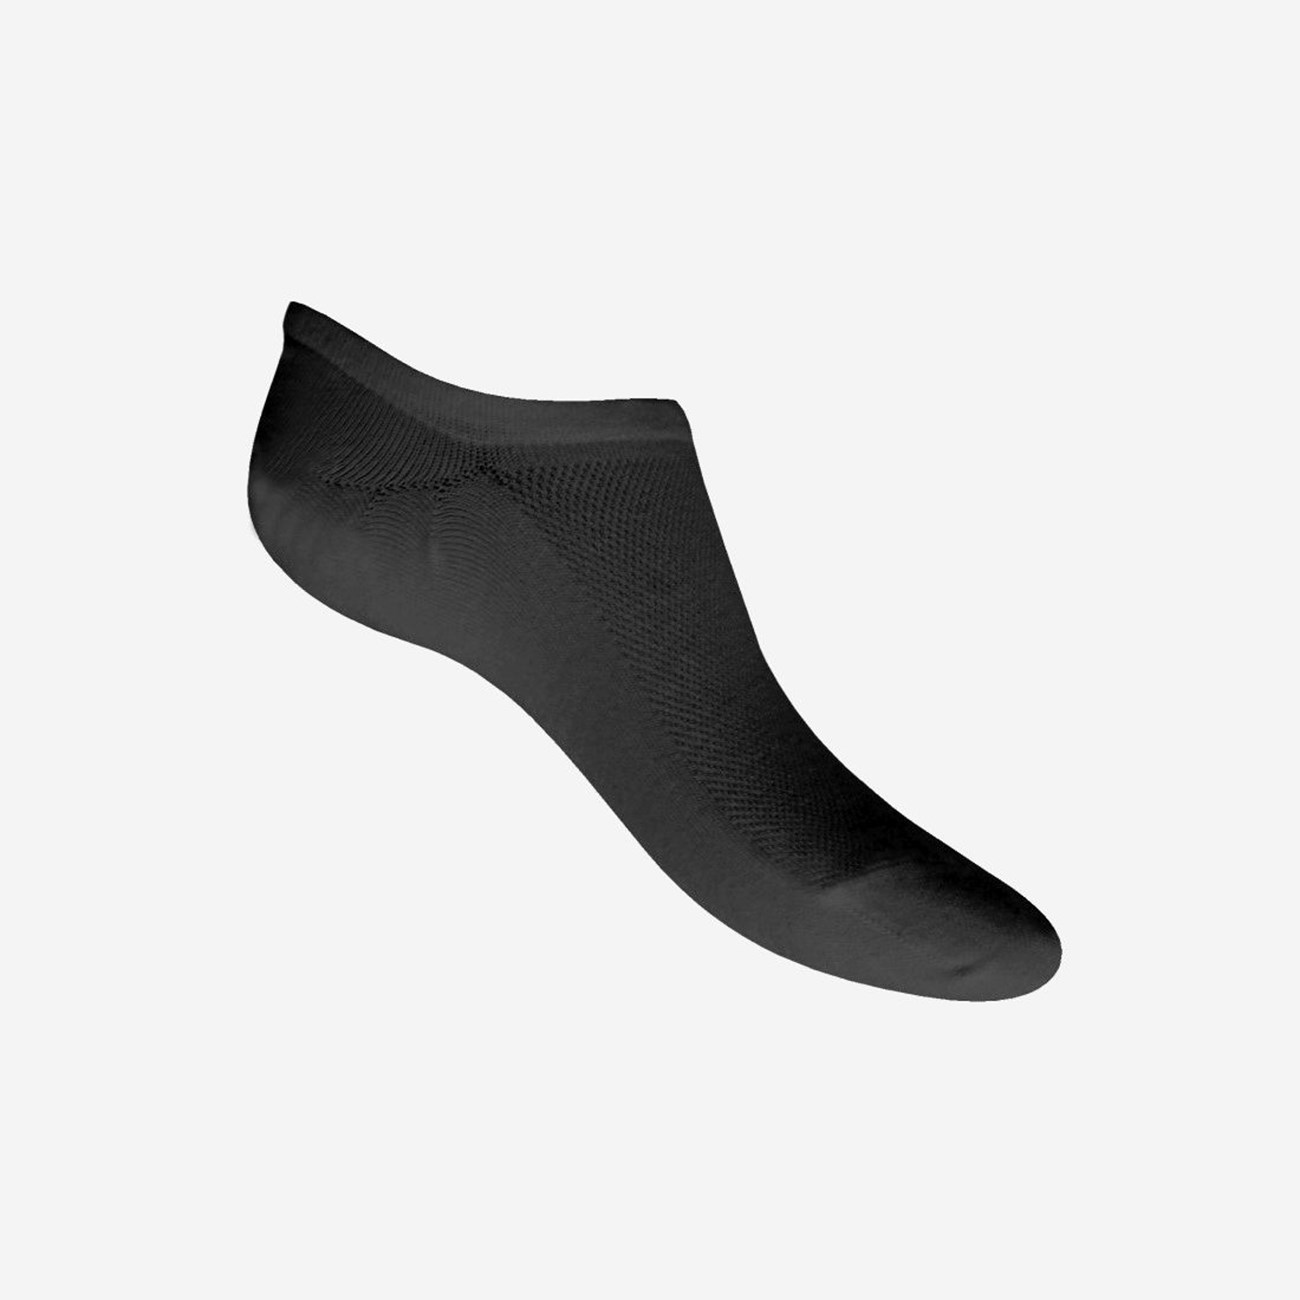  Ανδρικές Κάλτσες Bamboo W325-02 - The Athlete's Foot